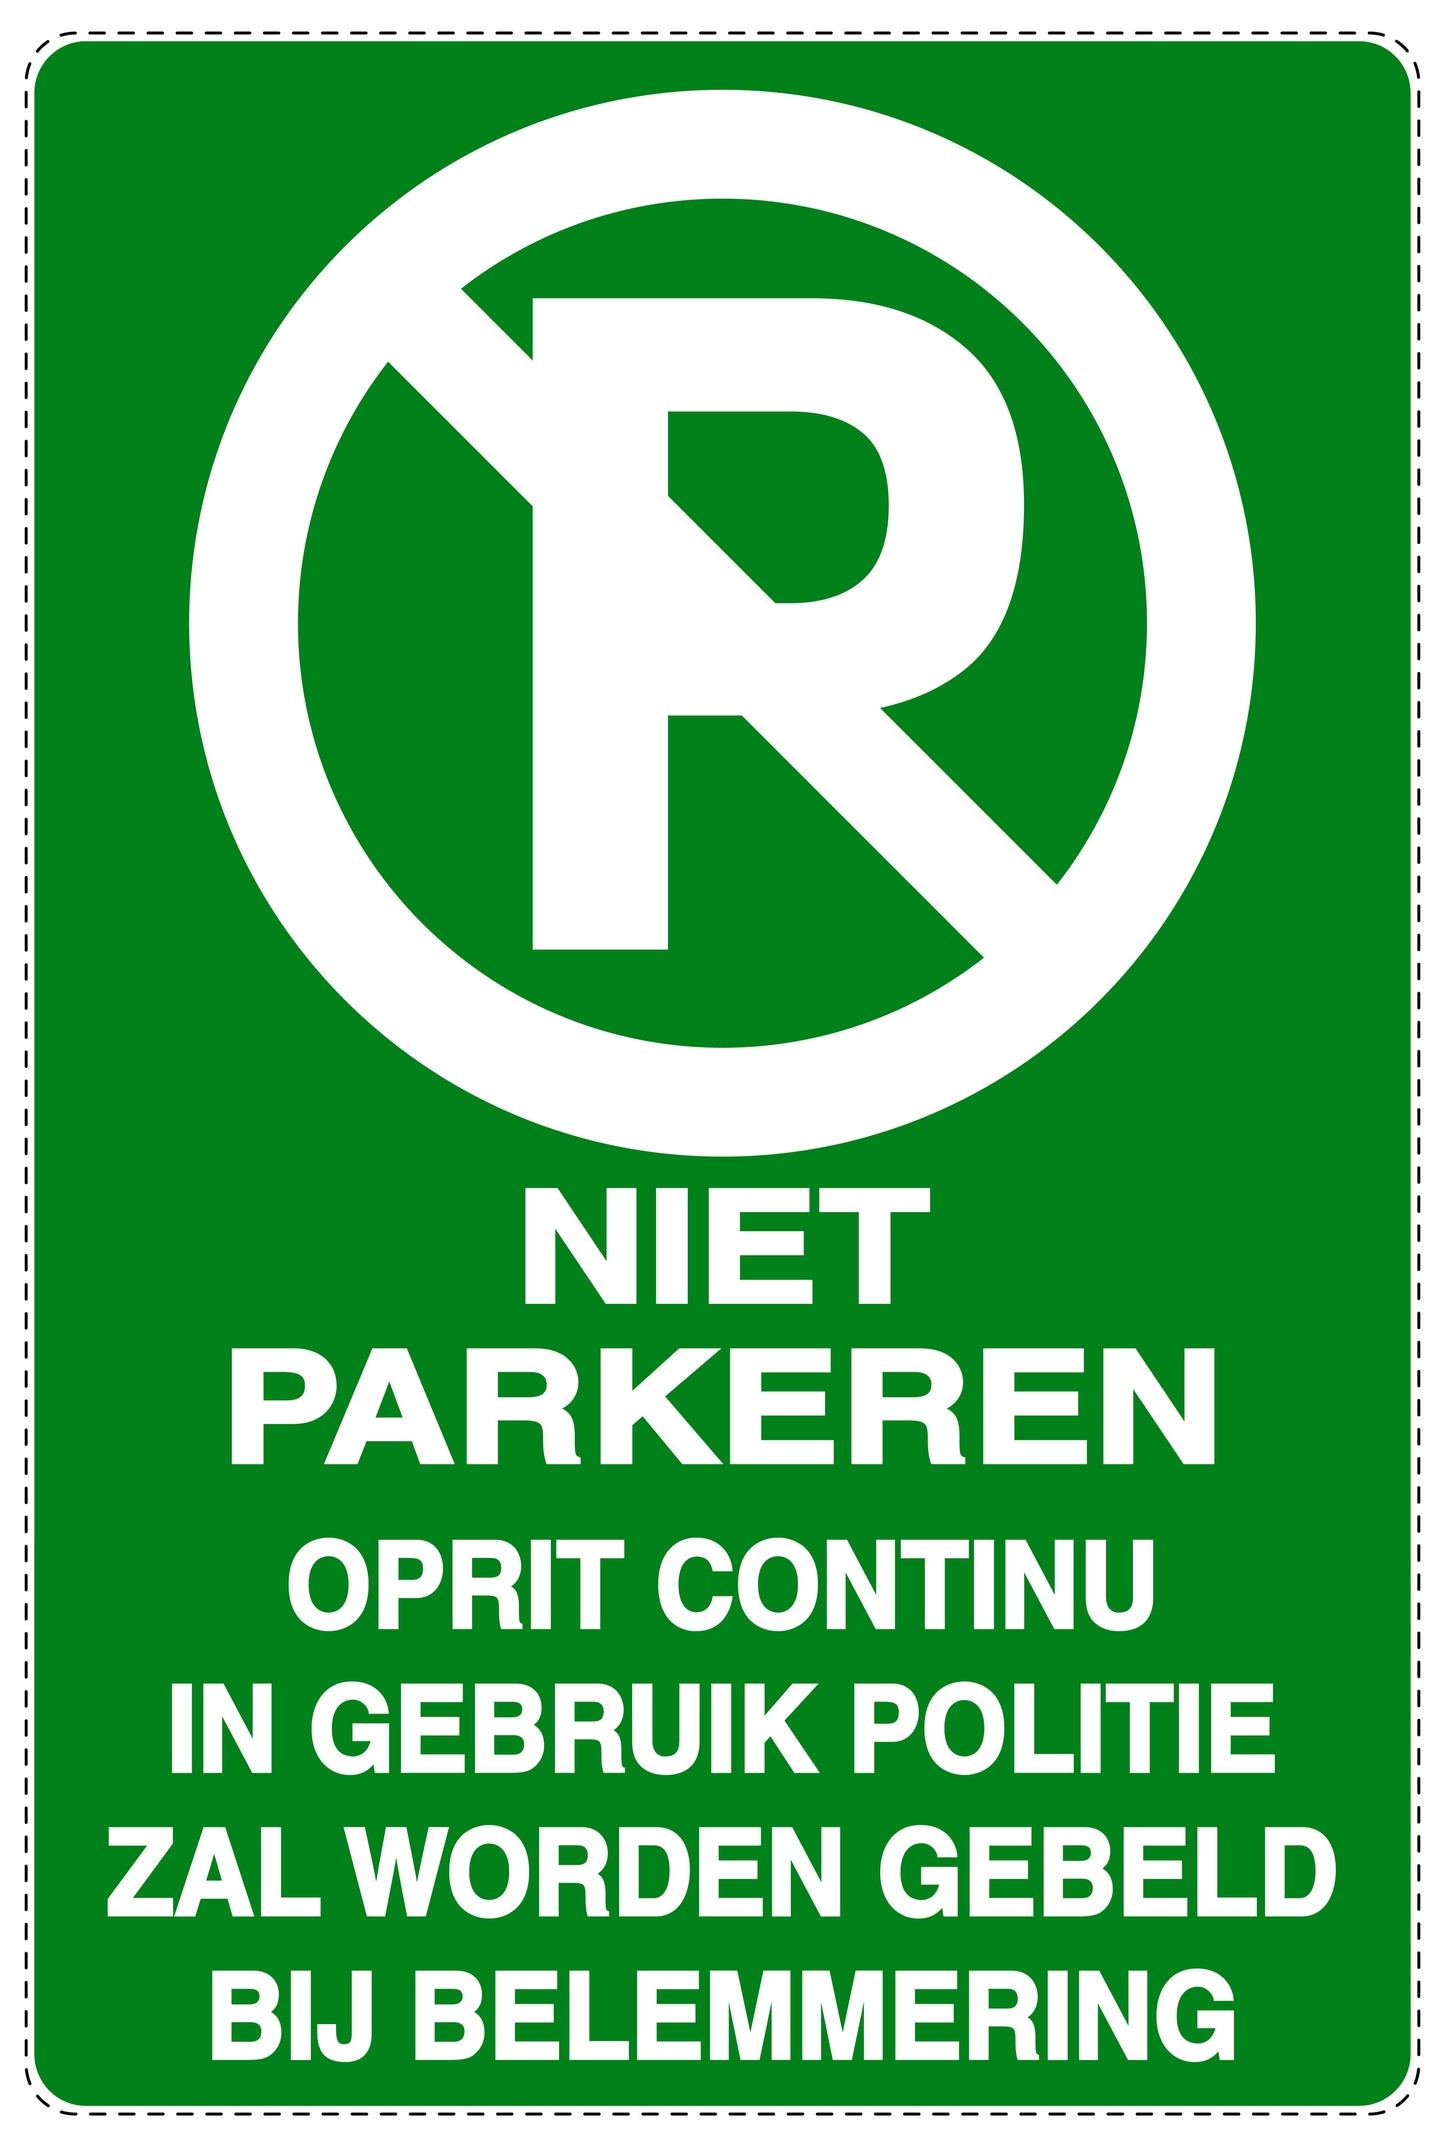 Niet parkeren Sticker "Niet parkeren oprit continuin in gebruik politie zal worden gebeld bij belemmering" EW-NPRK-2190-54